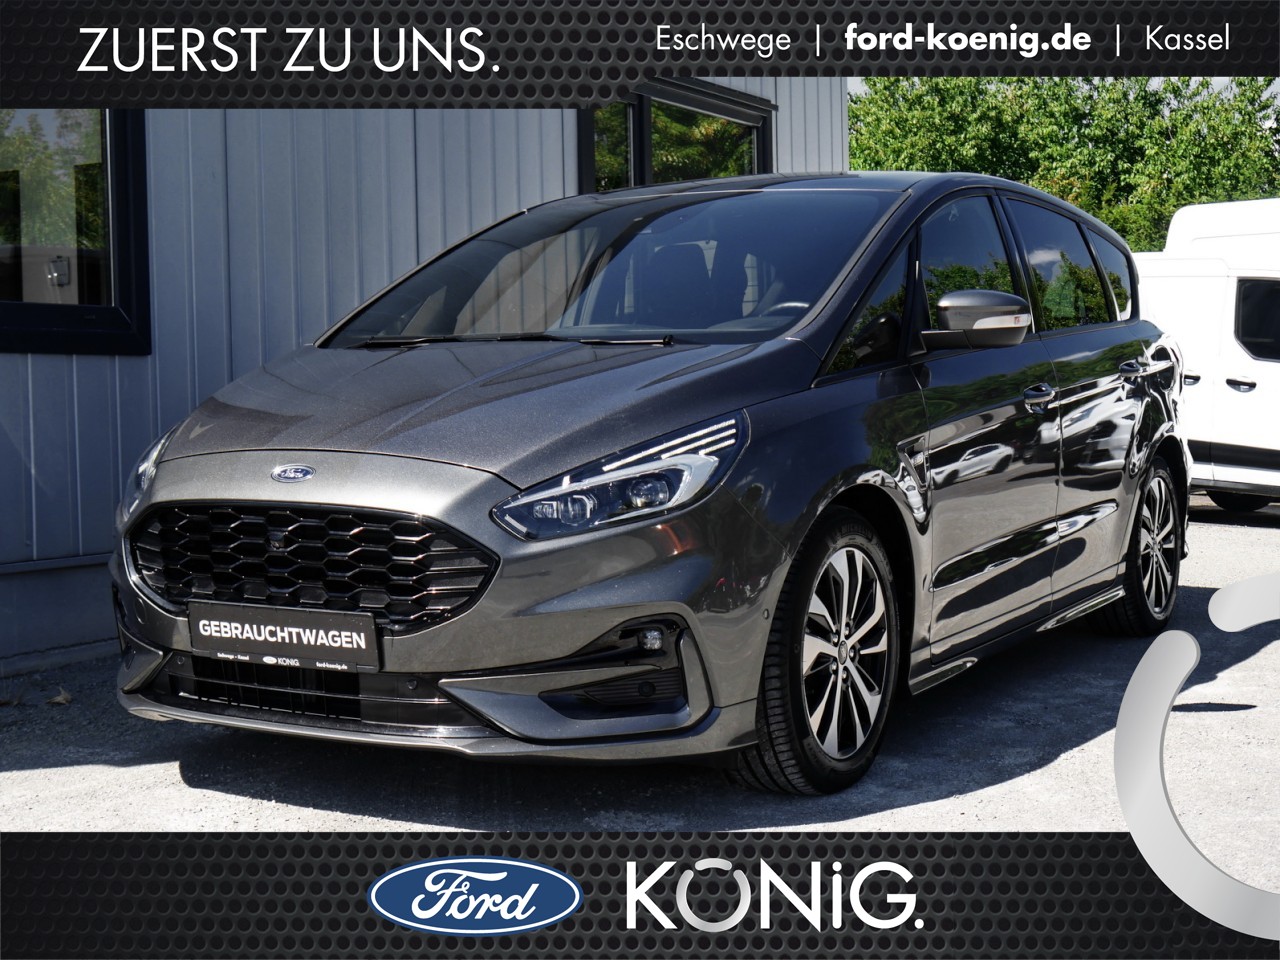 ᐅ Ford S-Max gebraucht in Eschwege, Kassel und Göttingen